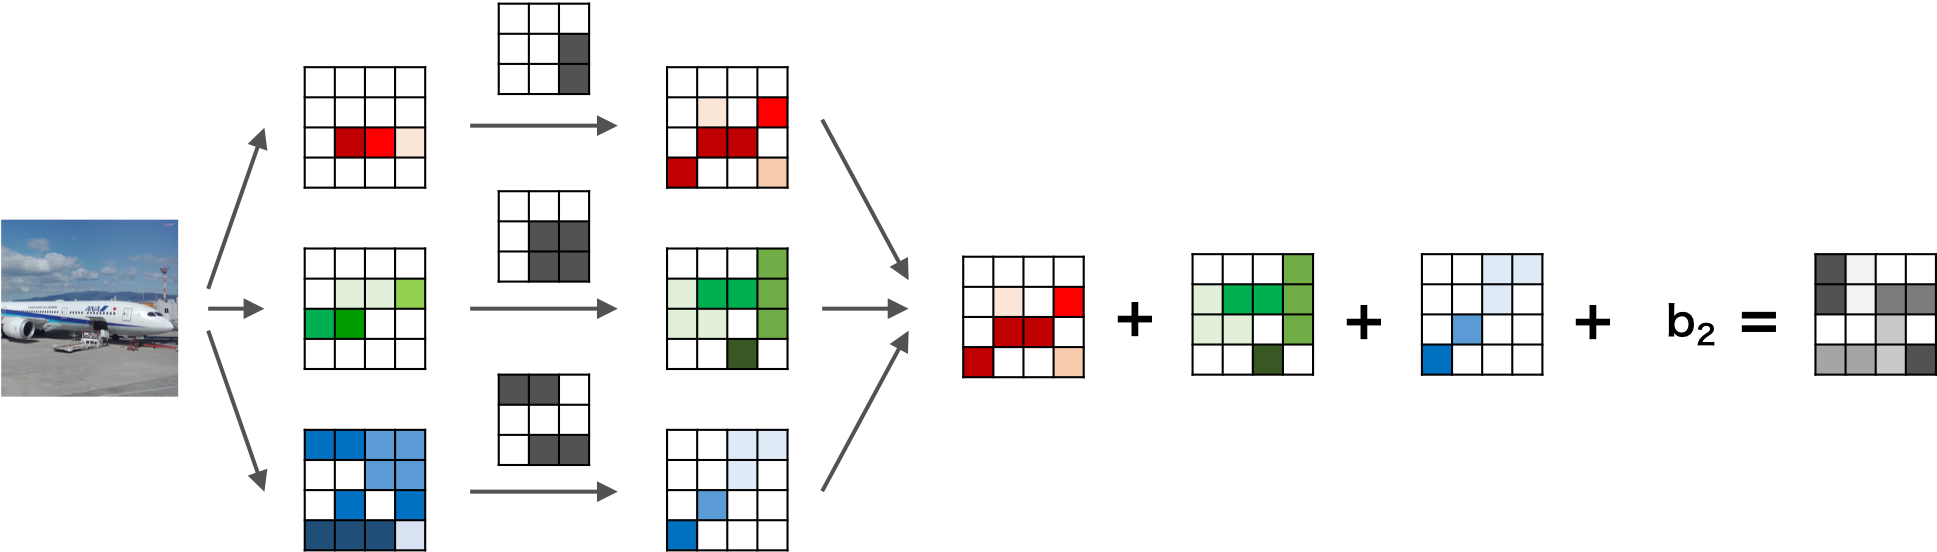 RGBカラー画像の畳み込みニューラルネットワークの畳み込み層の例3